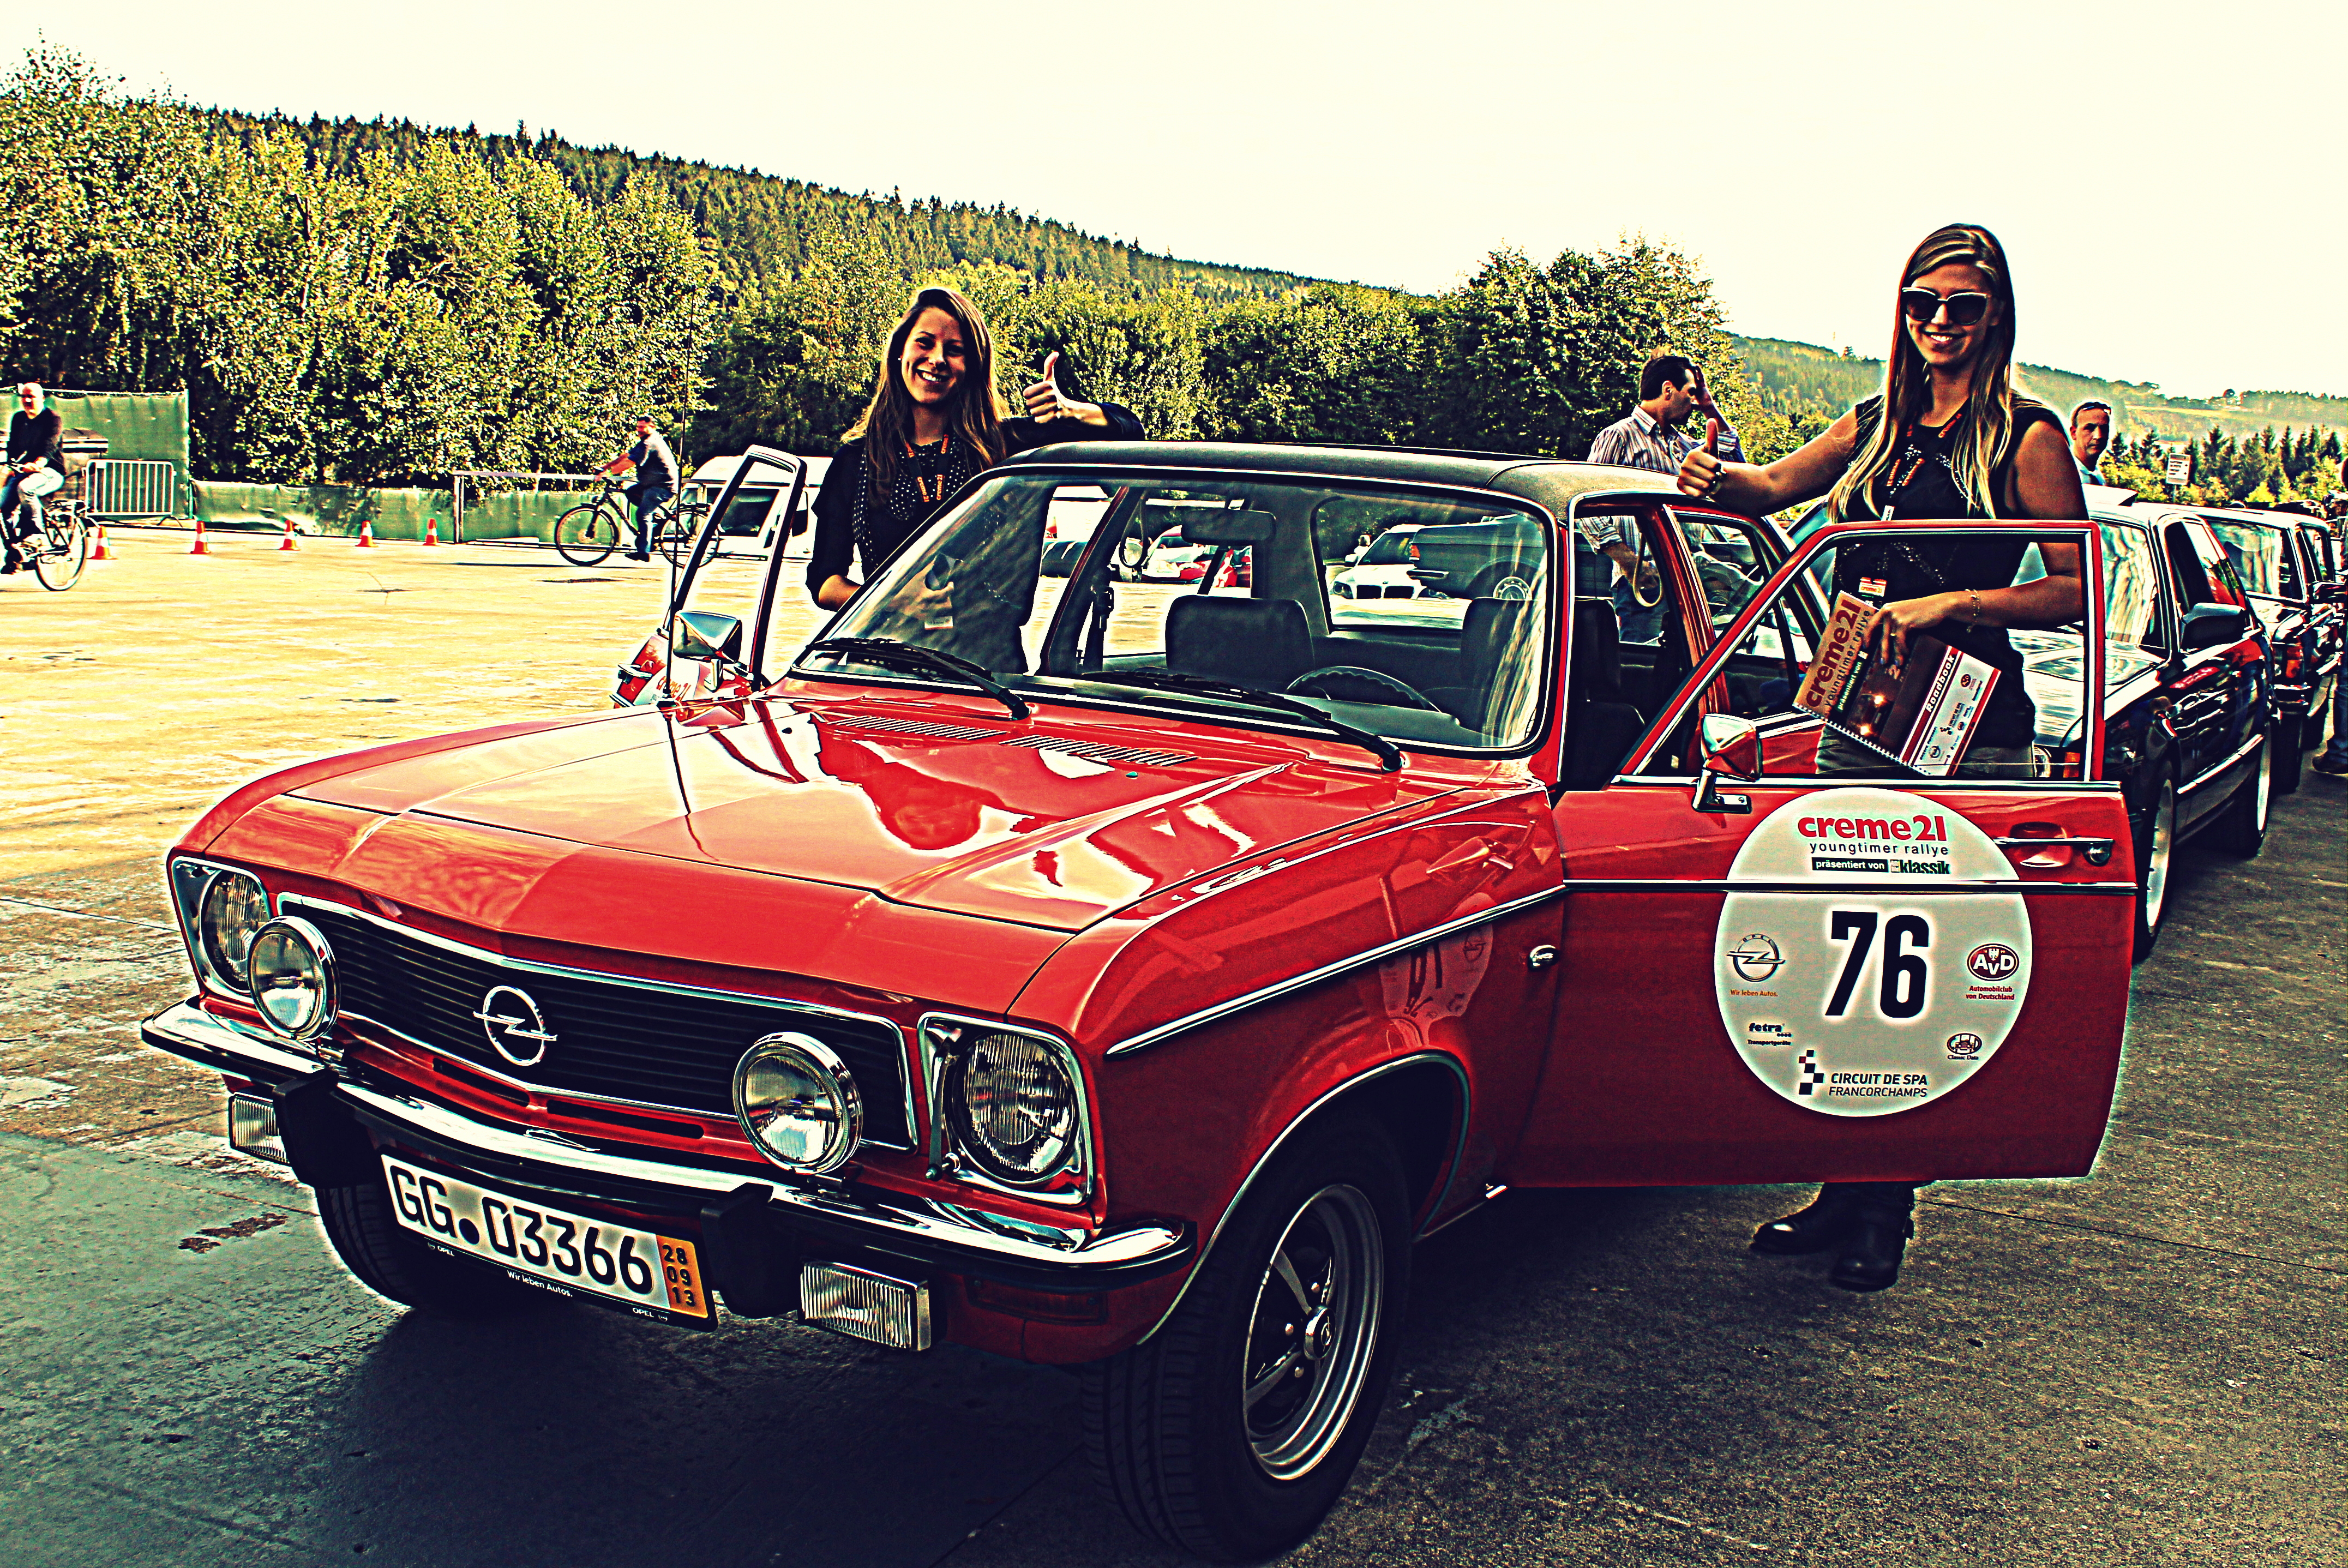 Bilder und Eindrücke zum ersten Tag der Creme 21 Youngtimer Rallye 2013